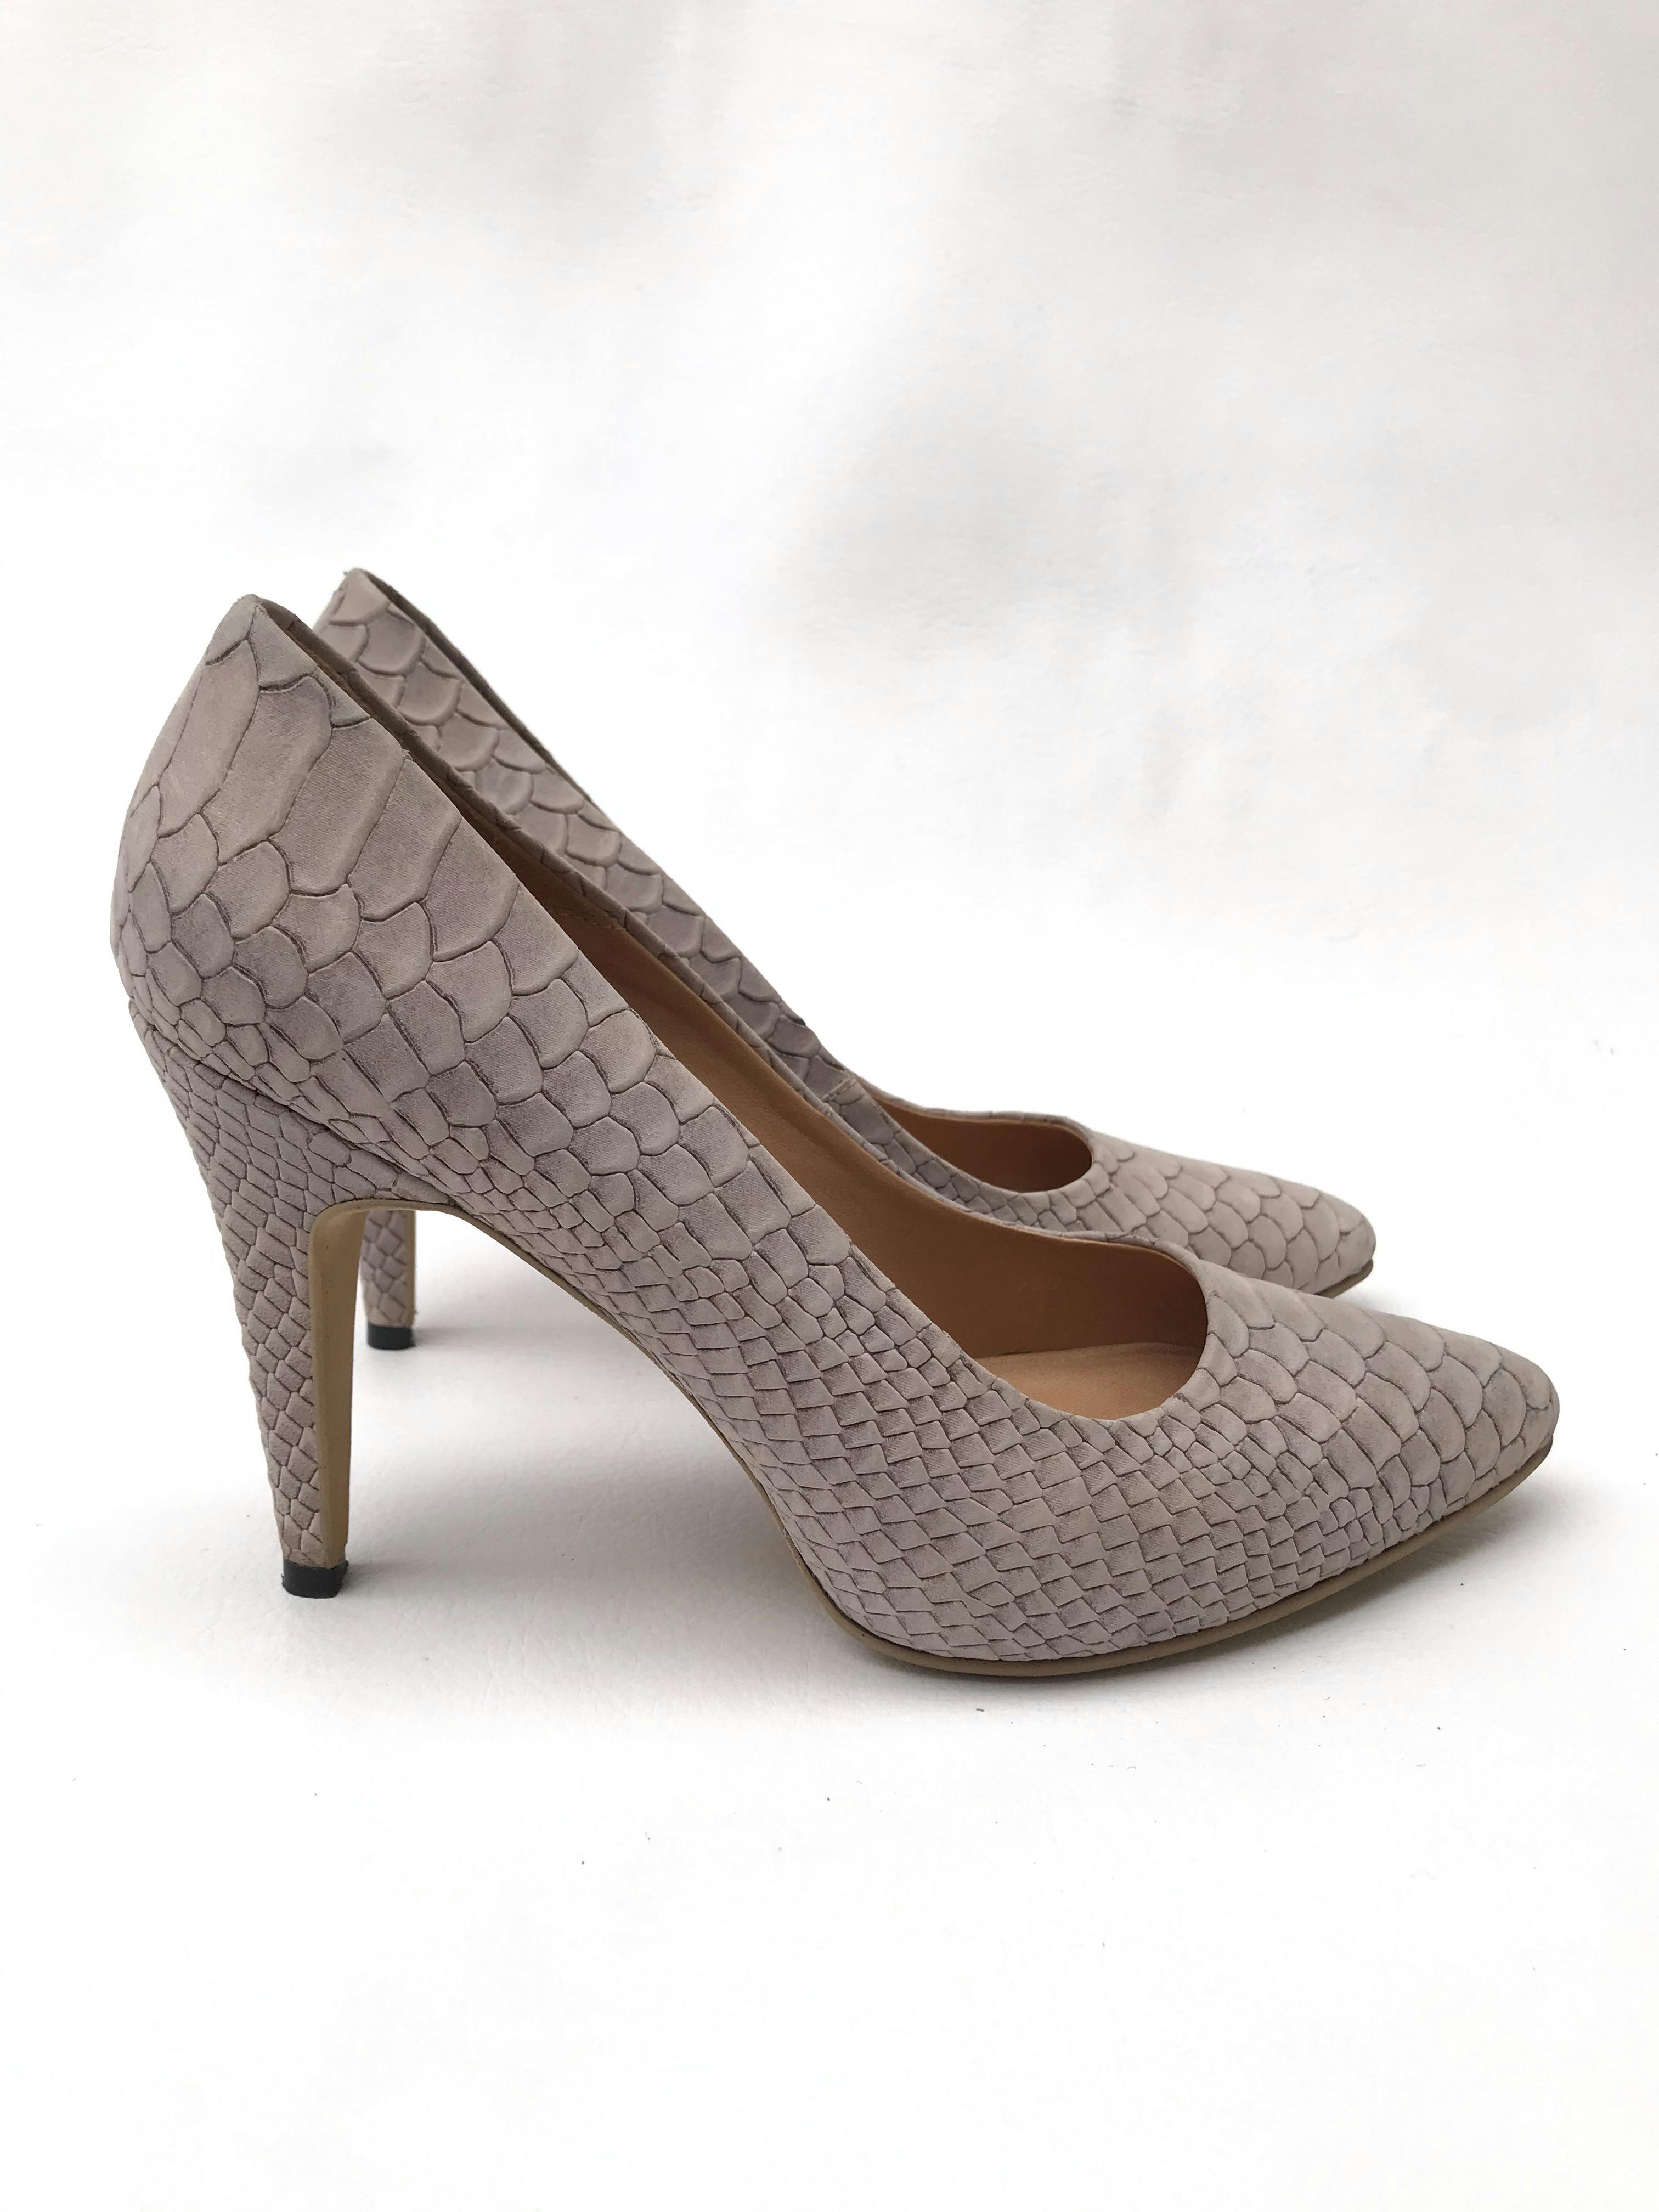 Zapatos stilettos HUMA BLANCO de cuero lila con textura pitón, taco 9cm. HERMOSOS Y EN EXCELENTE ESTADO 9/10. Precio original S/ 880